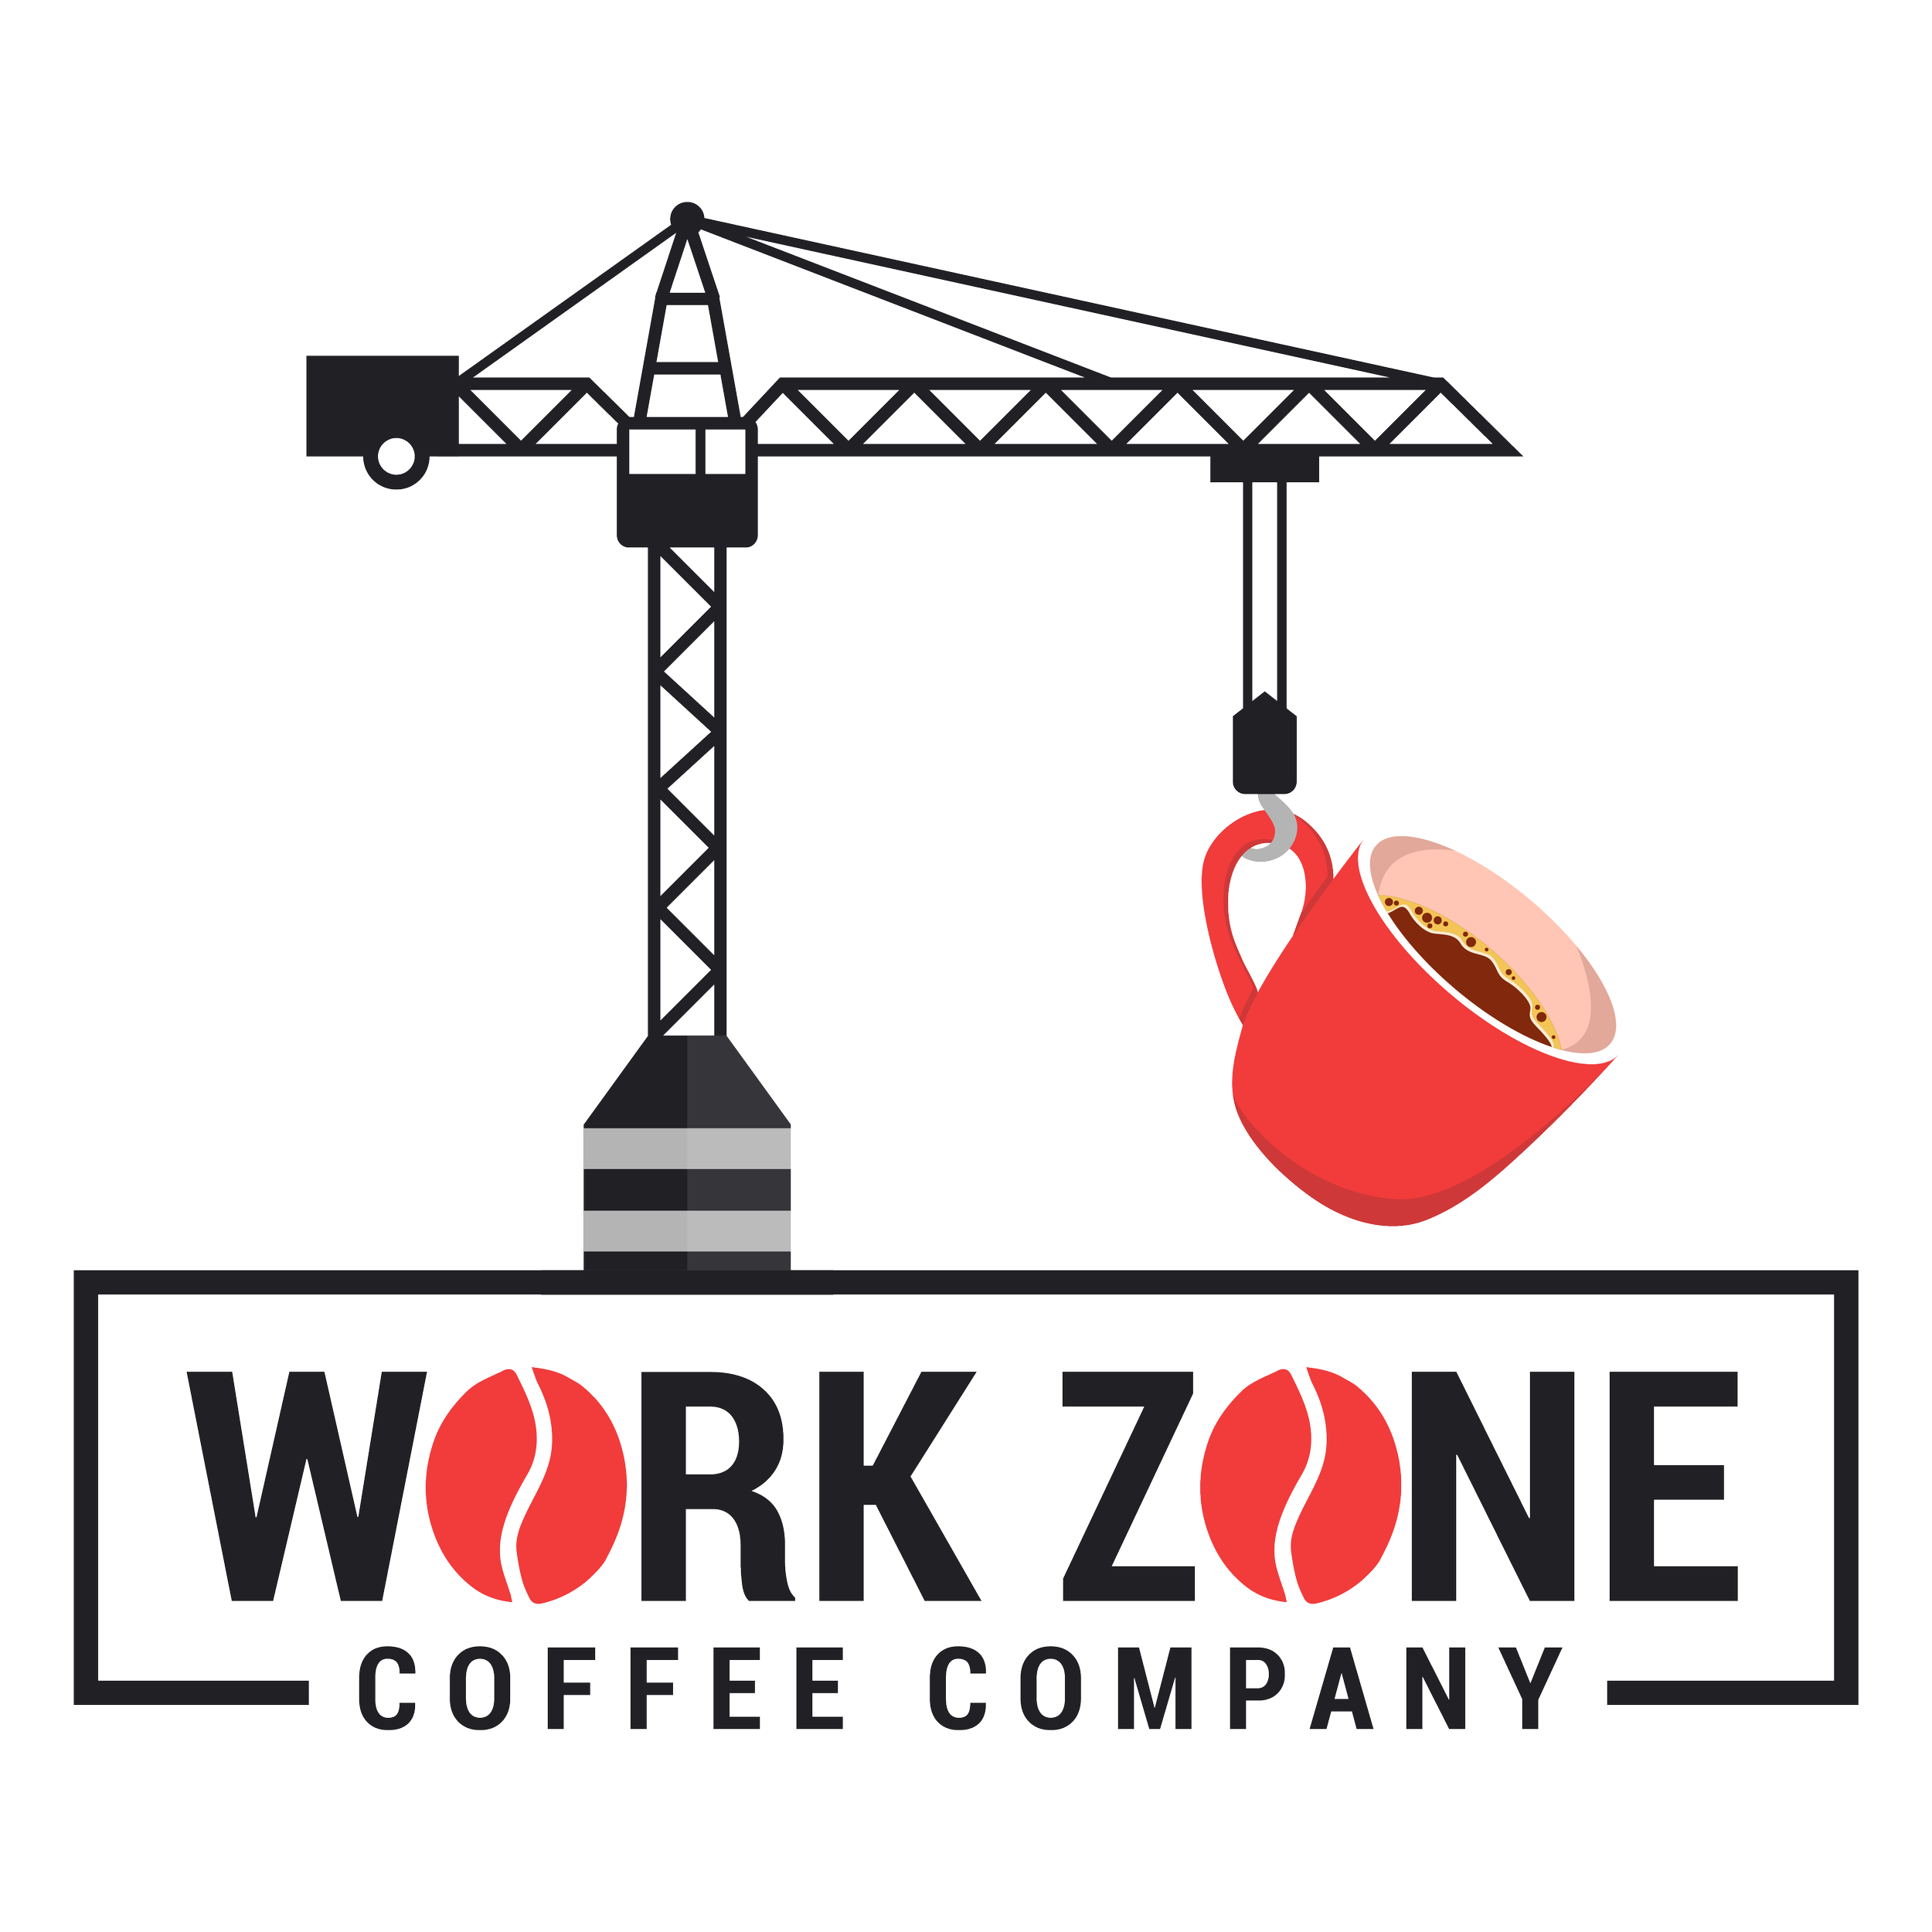 Workzone Coffee